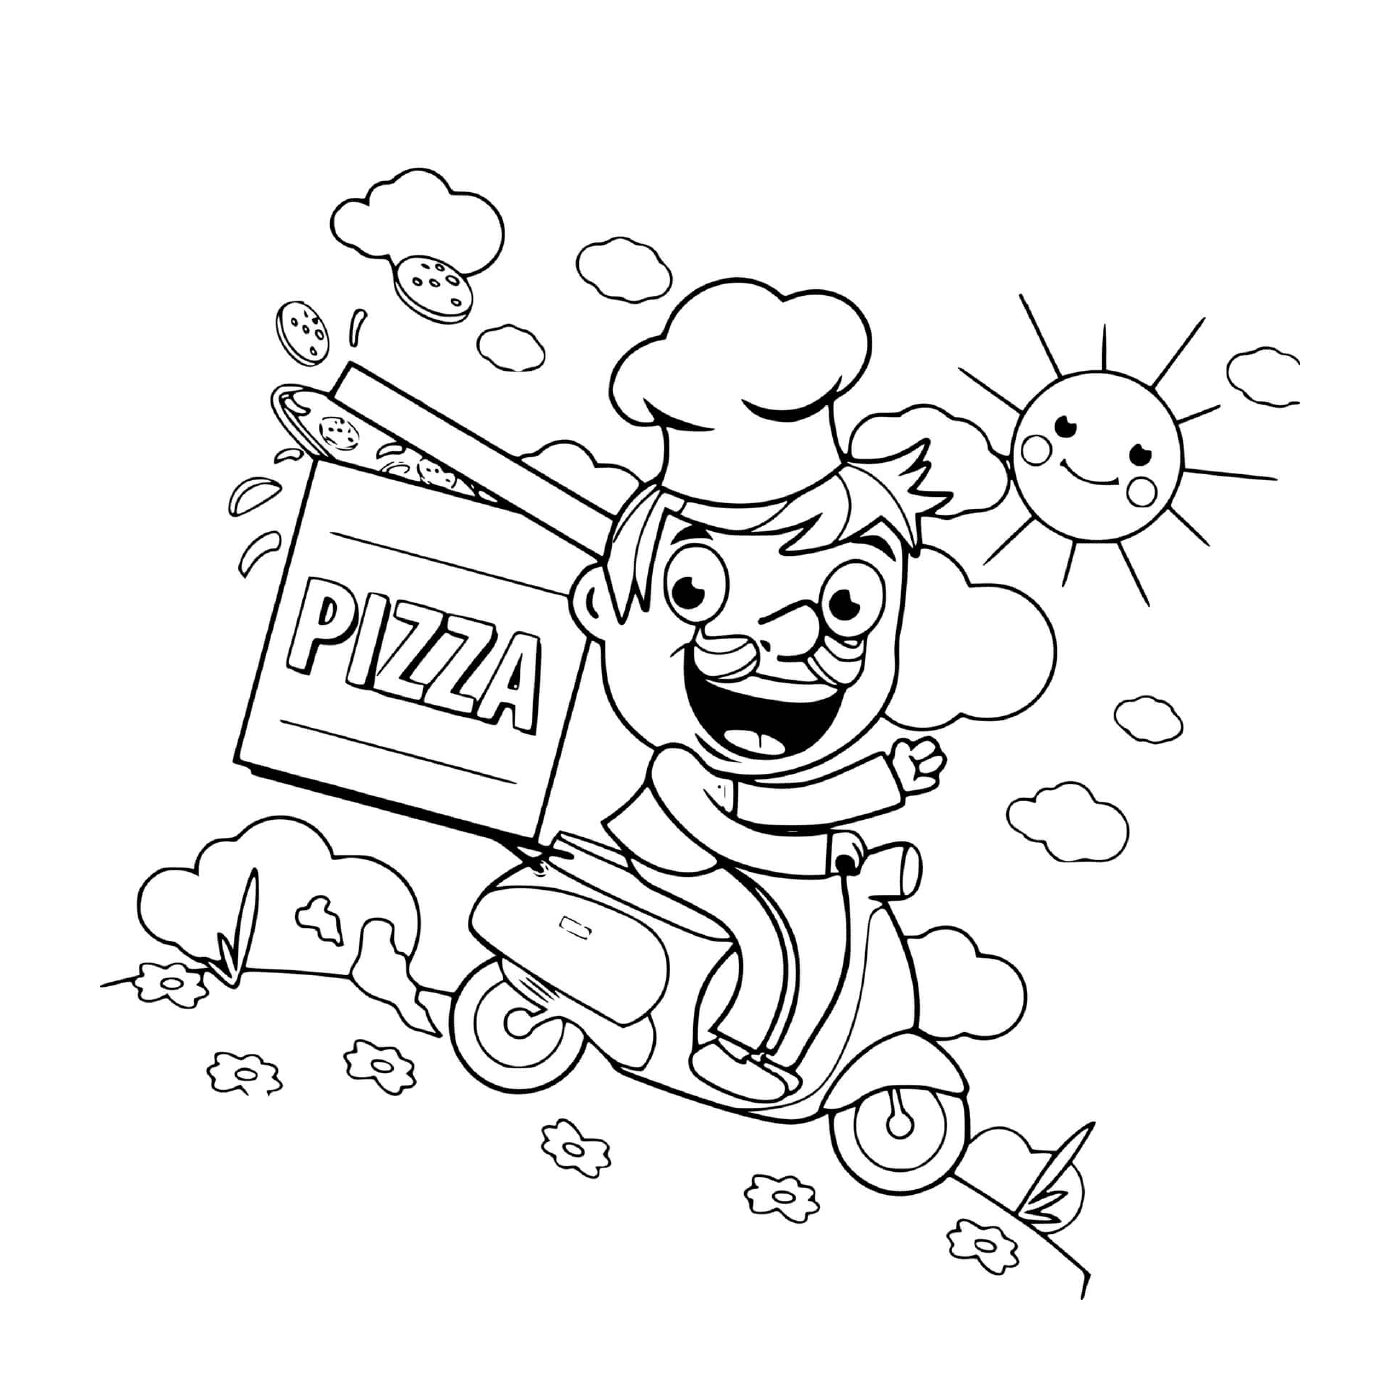   Un livreur de pizza en scooter 